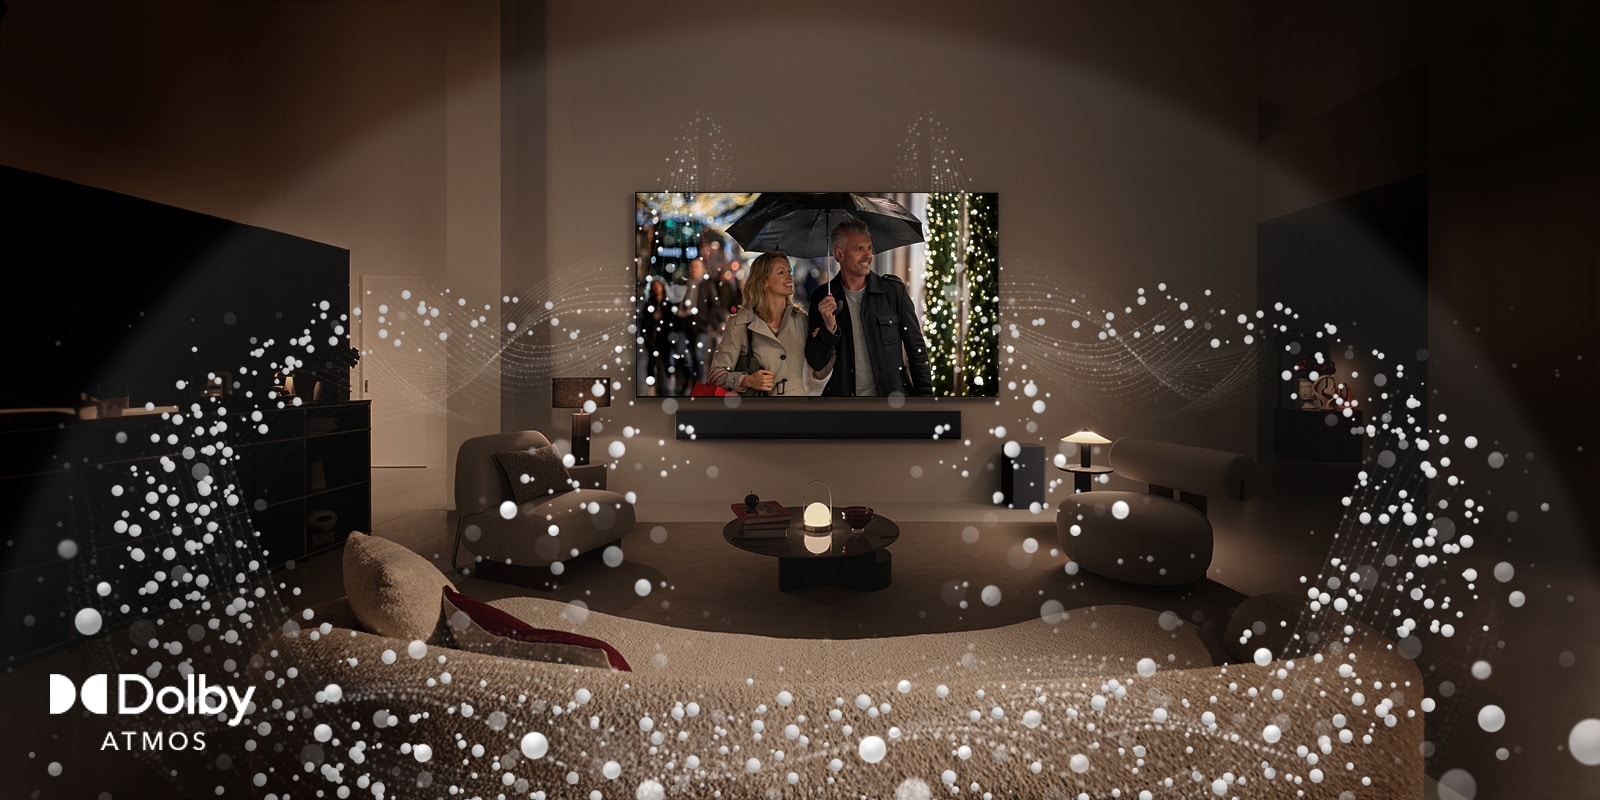 慵懶昏暗的客廳空間，LG OLED TV 展現一對情侶共撐一把雨傘，而且明亮的圓形圖案圍繞著房間。Dolby Atoms 標誌位於左下角。